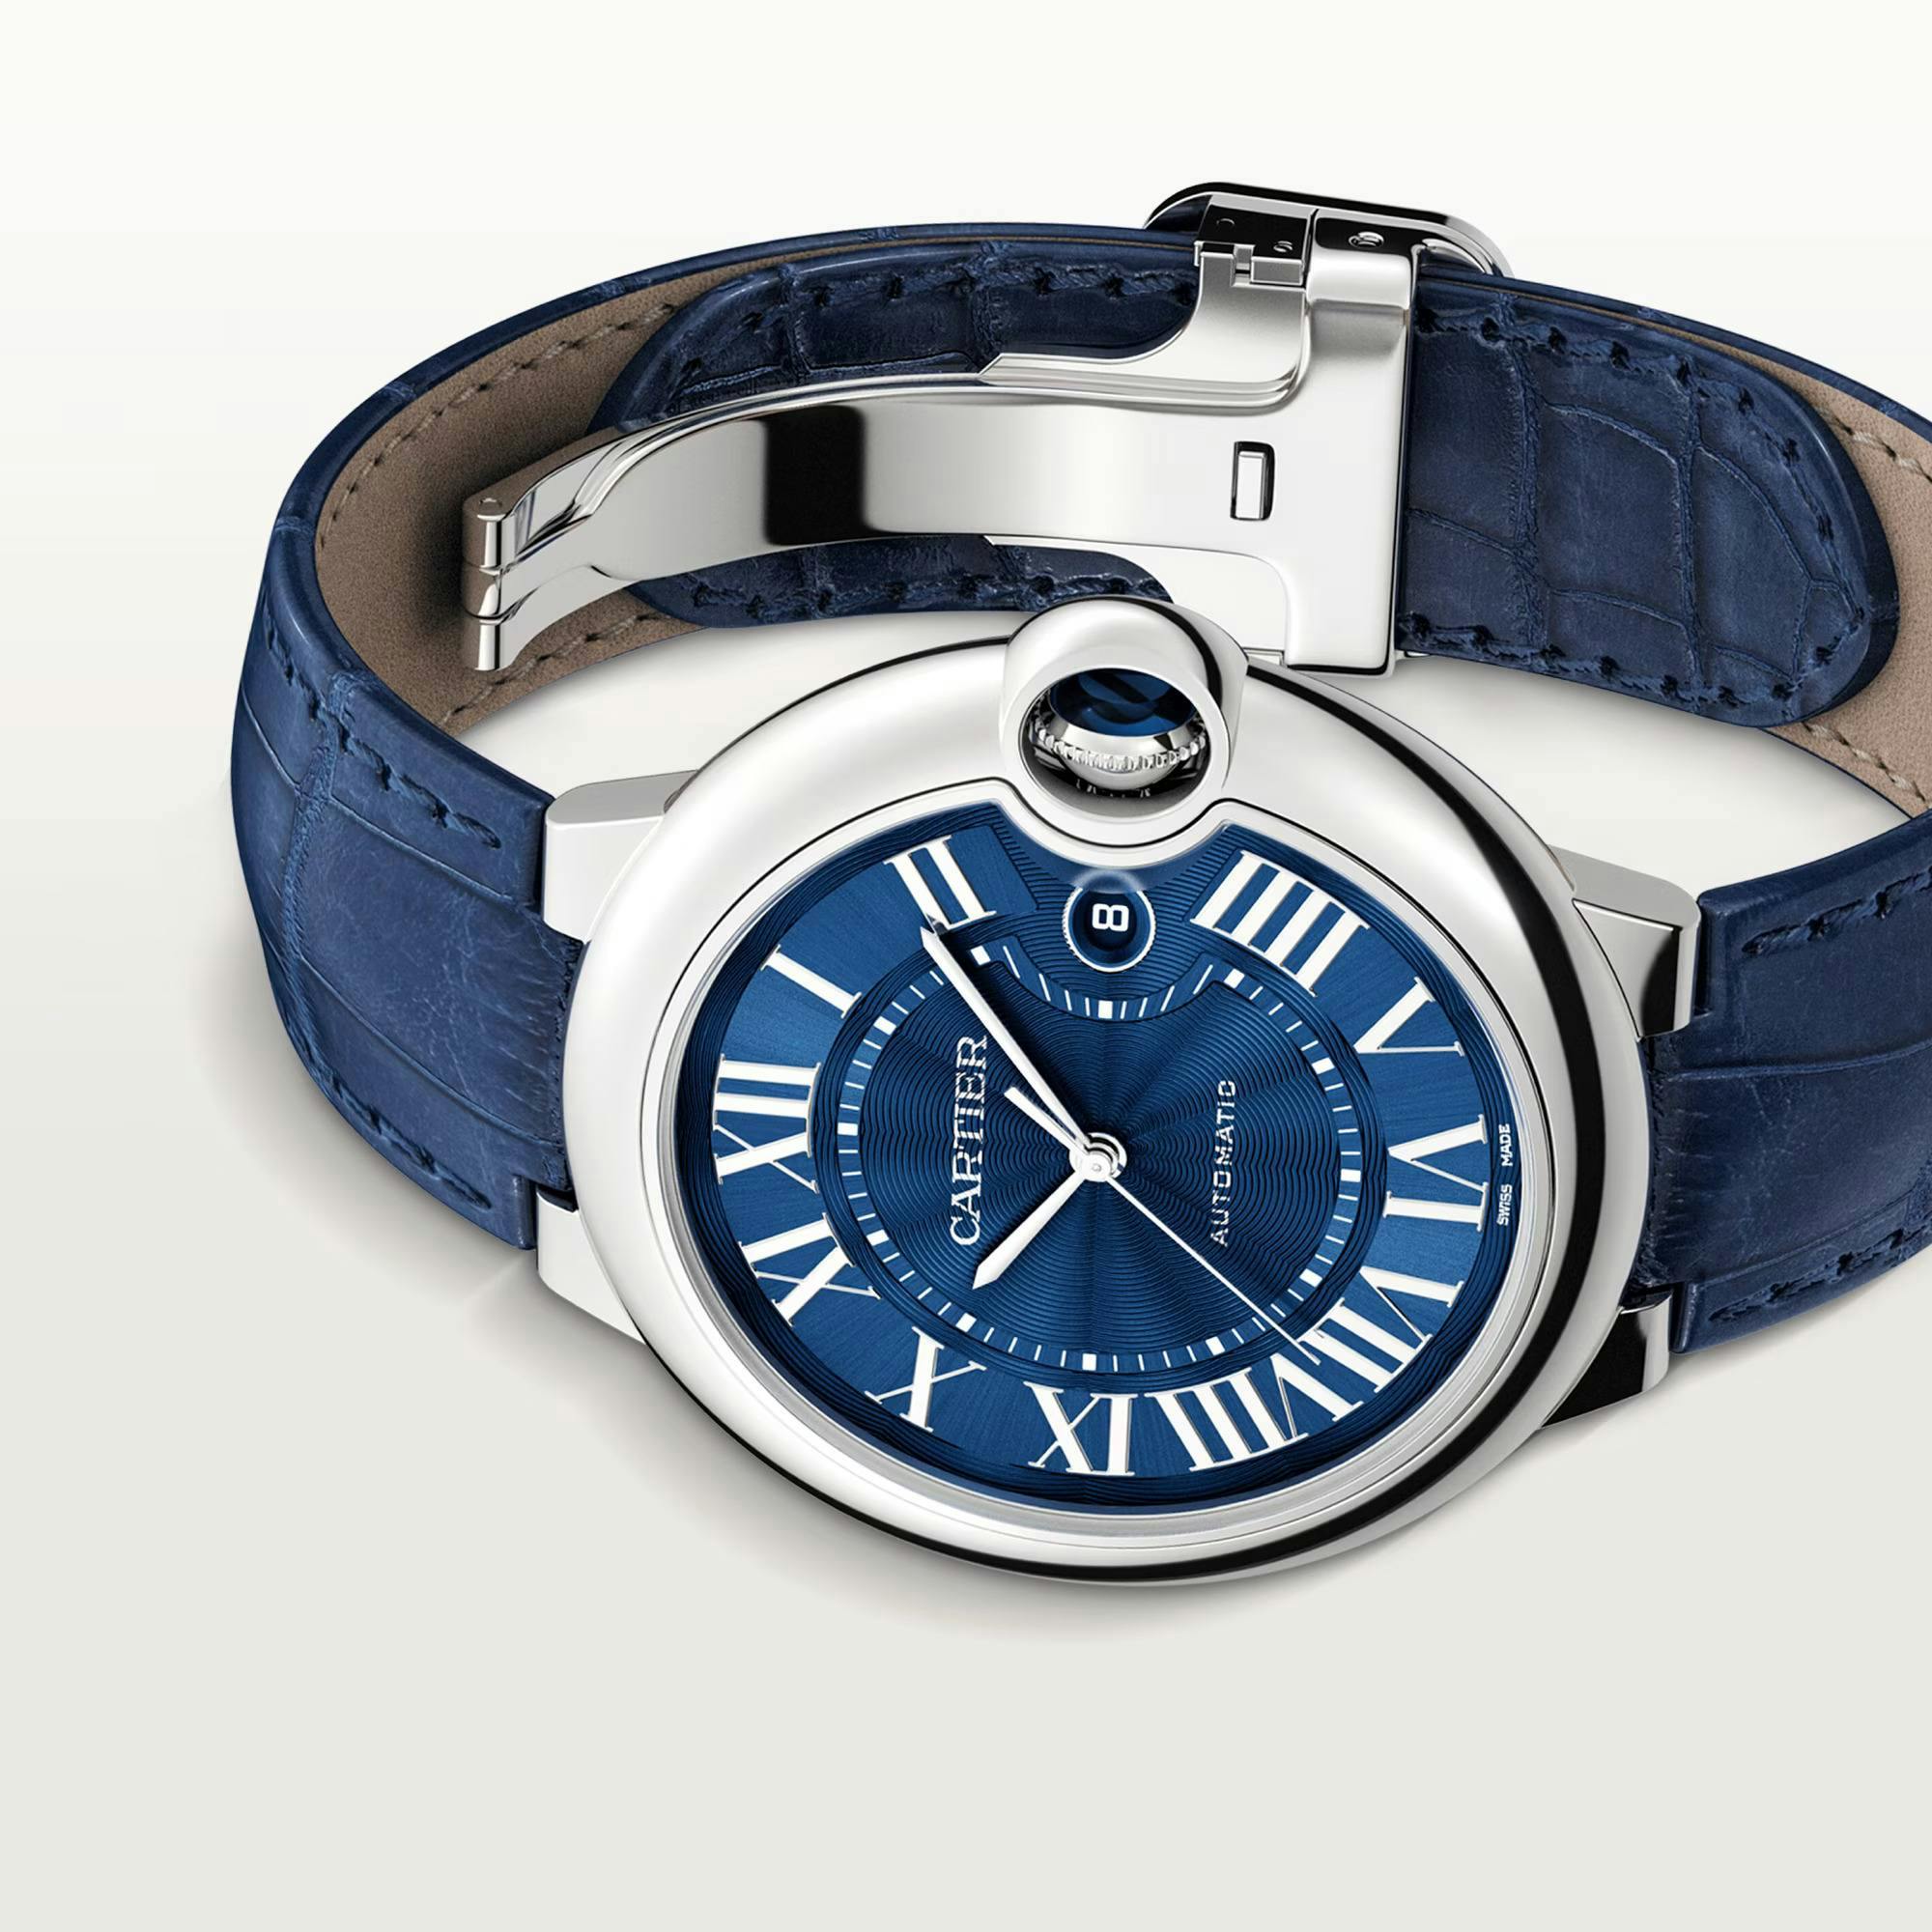 Ballon Blue de Cartier Watch, 42mm 1